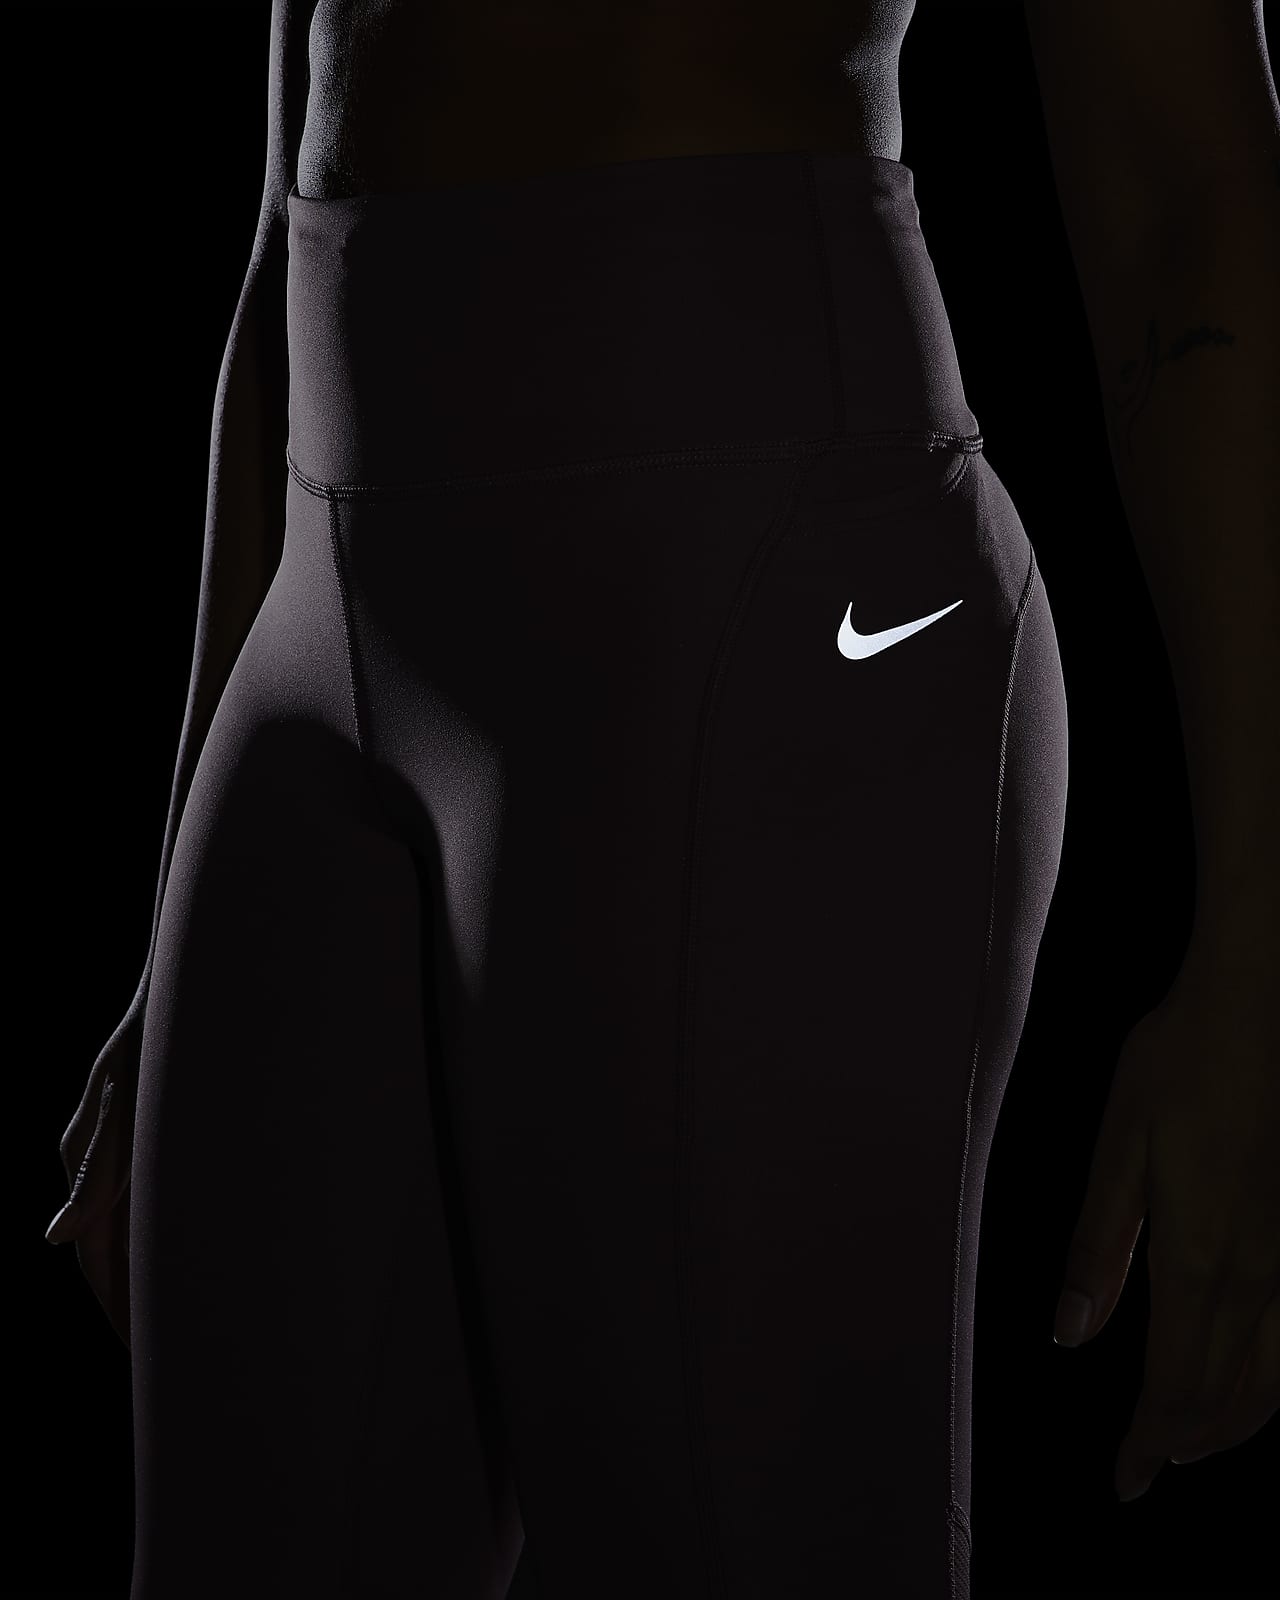 Women's Running Tights. Nike CA